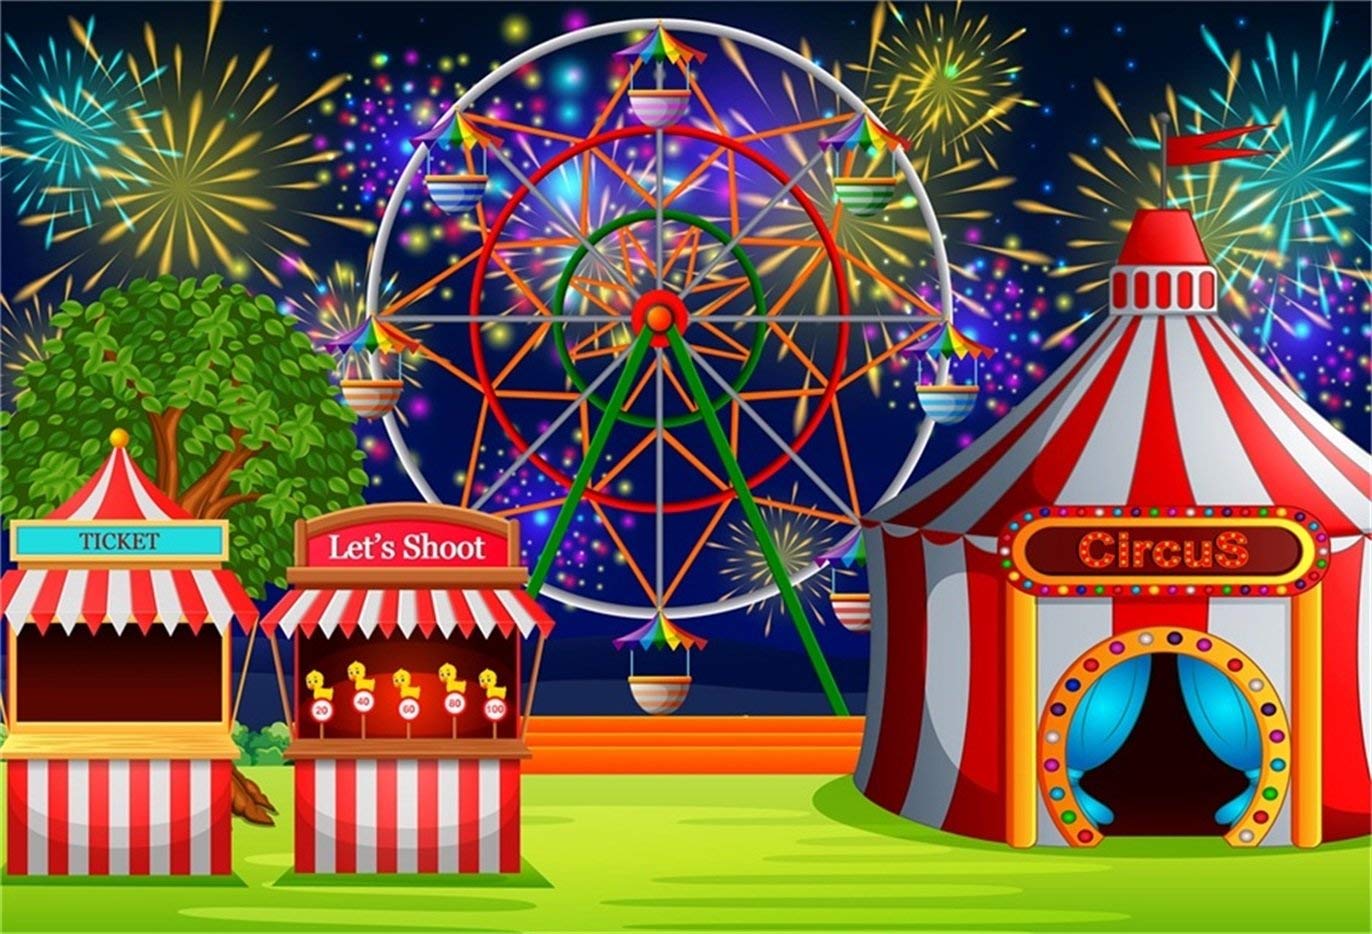 Aofoto 5x3ft Fairground Circus Tent Backdrop Cartoon Cartoon Amusement Park